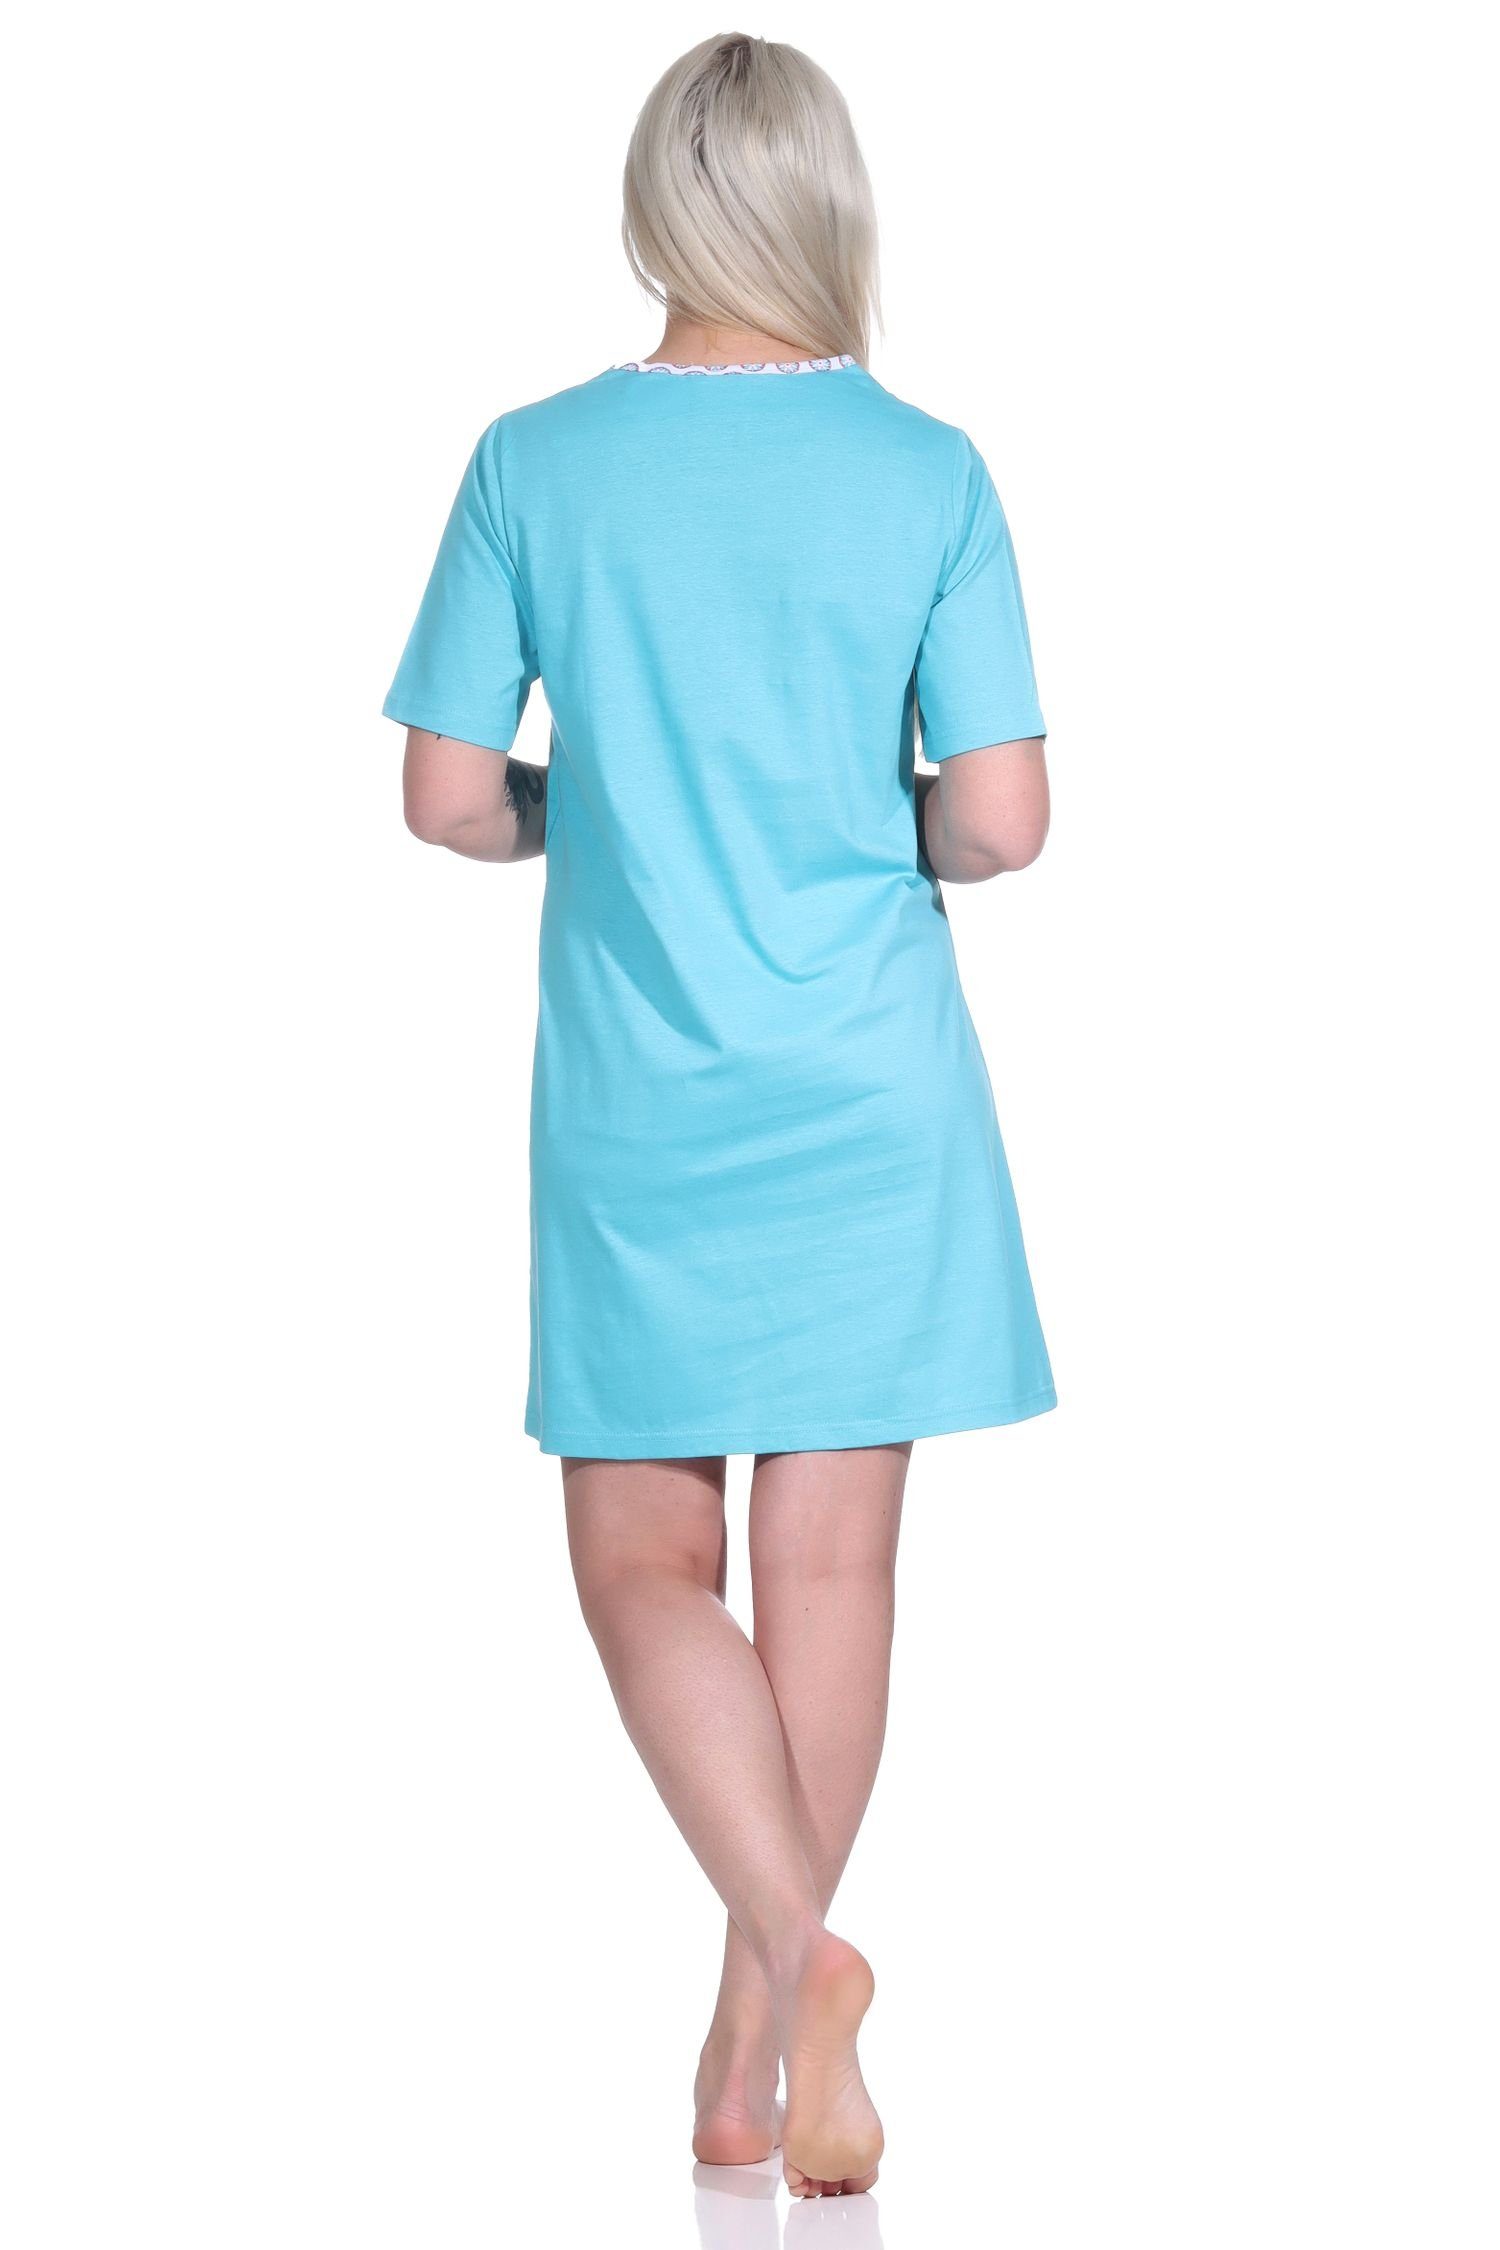 Normann Nachthemd Damen Nachthemd, kurzarm - mit 153 Blumen-Motiv Bigshirt 123 türkis 10